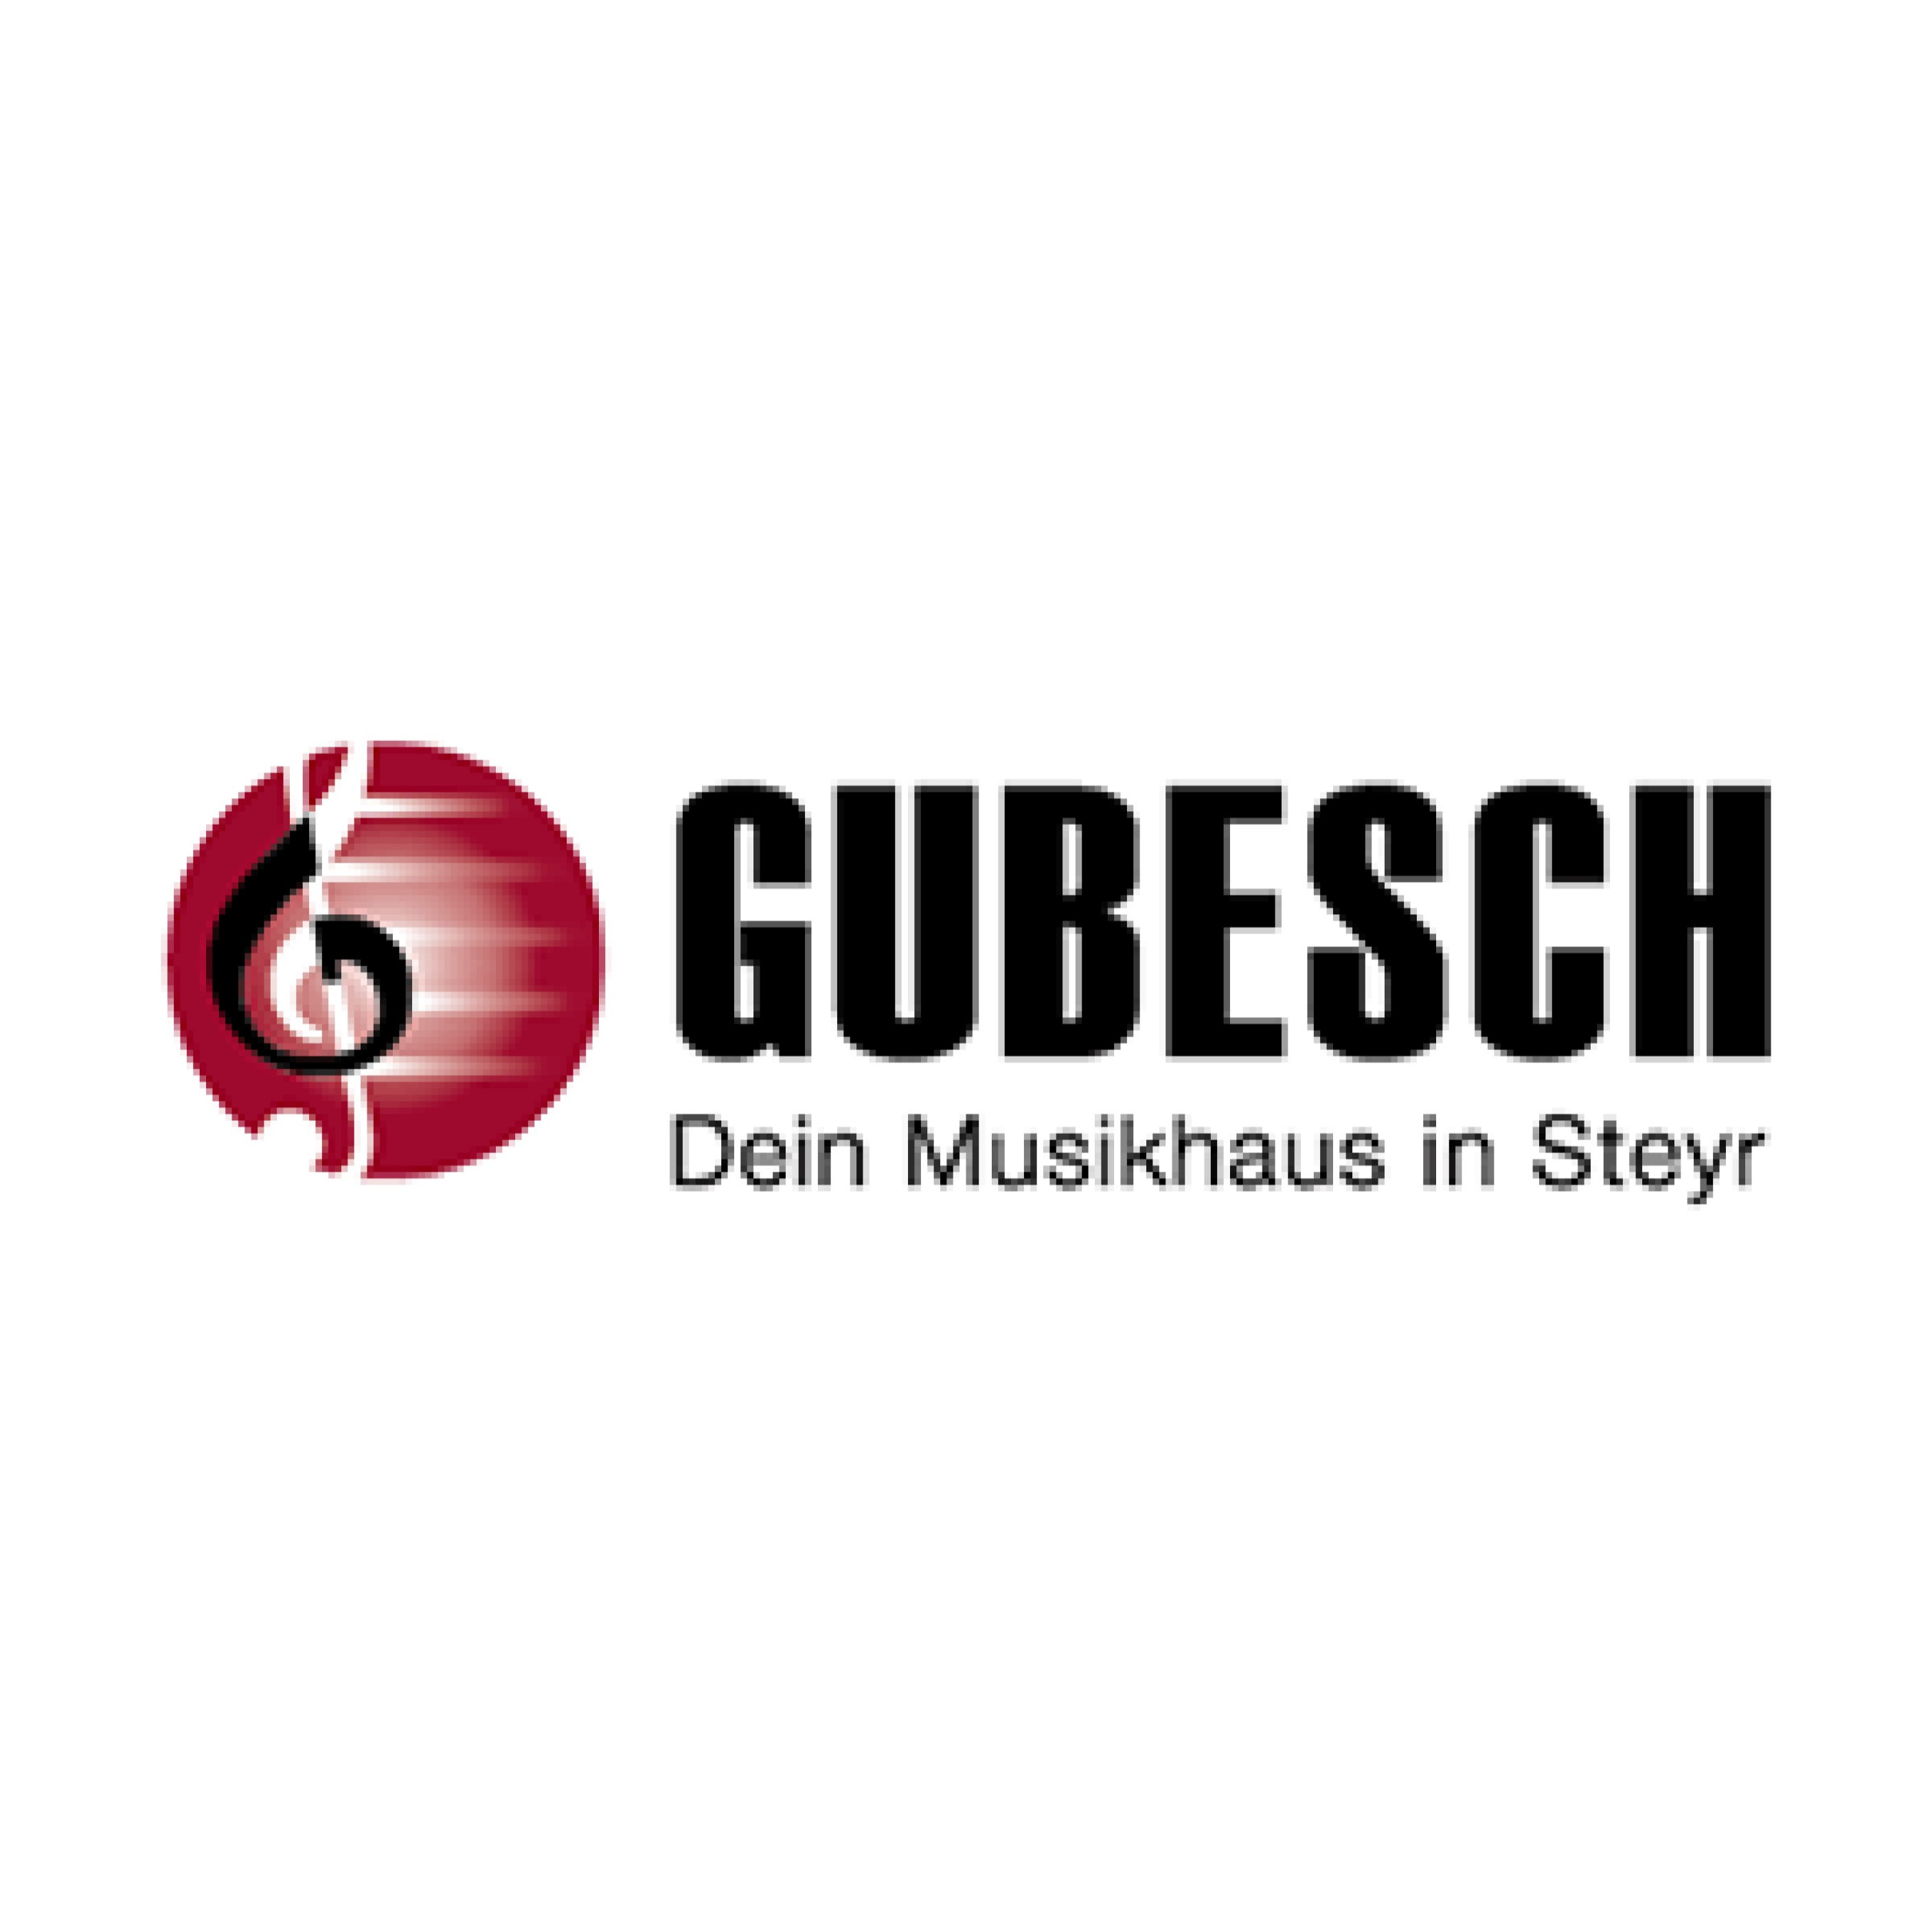 Musikhaus Gubesch - Dein Musikhaus in Steyr Logo